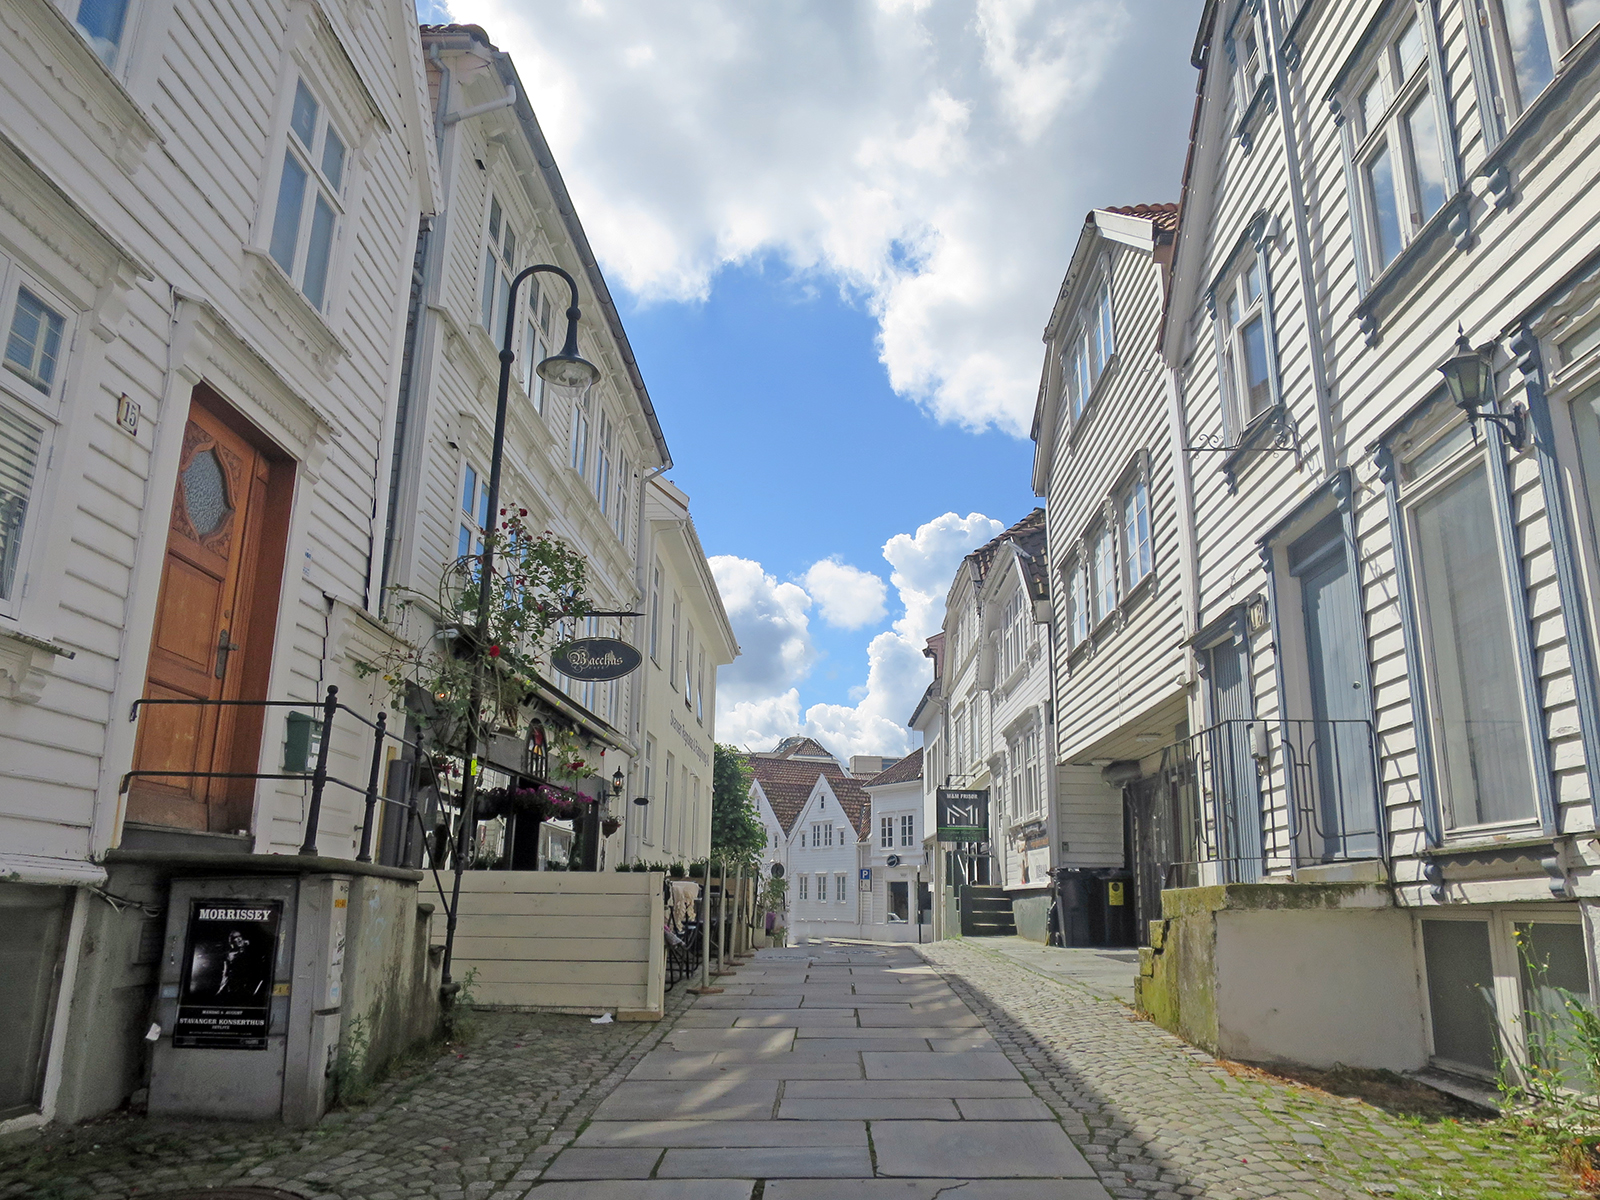 Stop-over Stavanger: Warum man bei einer Norwegen-Kreuzfahrt in Stavanger an Land gehen sollte